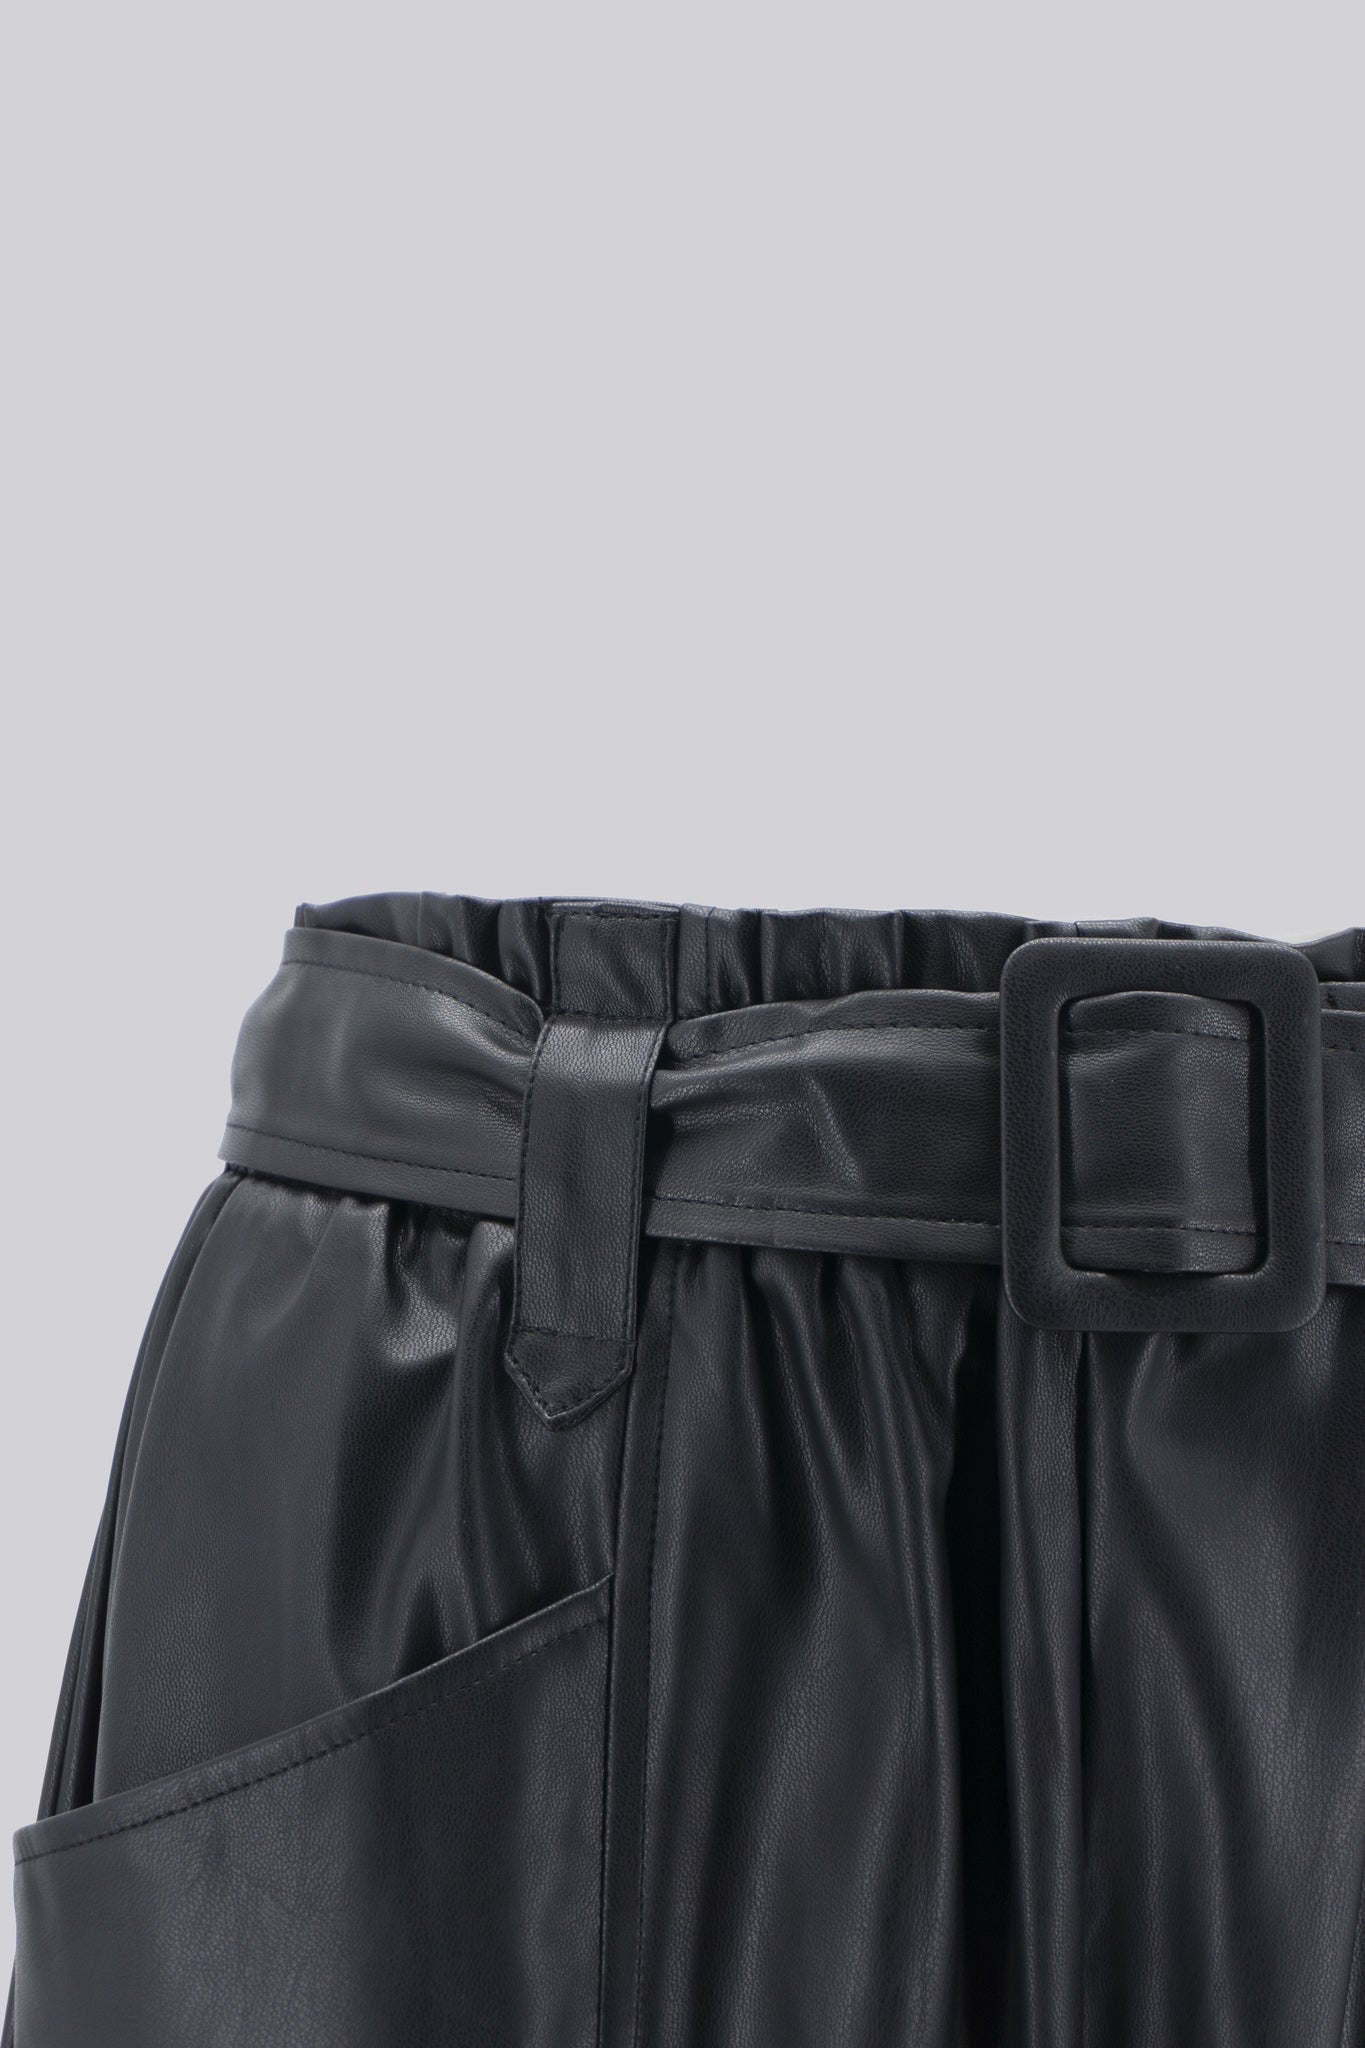 Pantalone in Eco Pelle / Nero - Ideal Moda